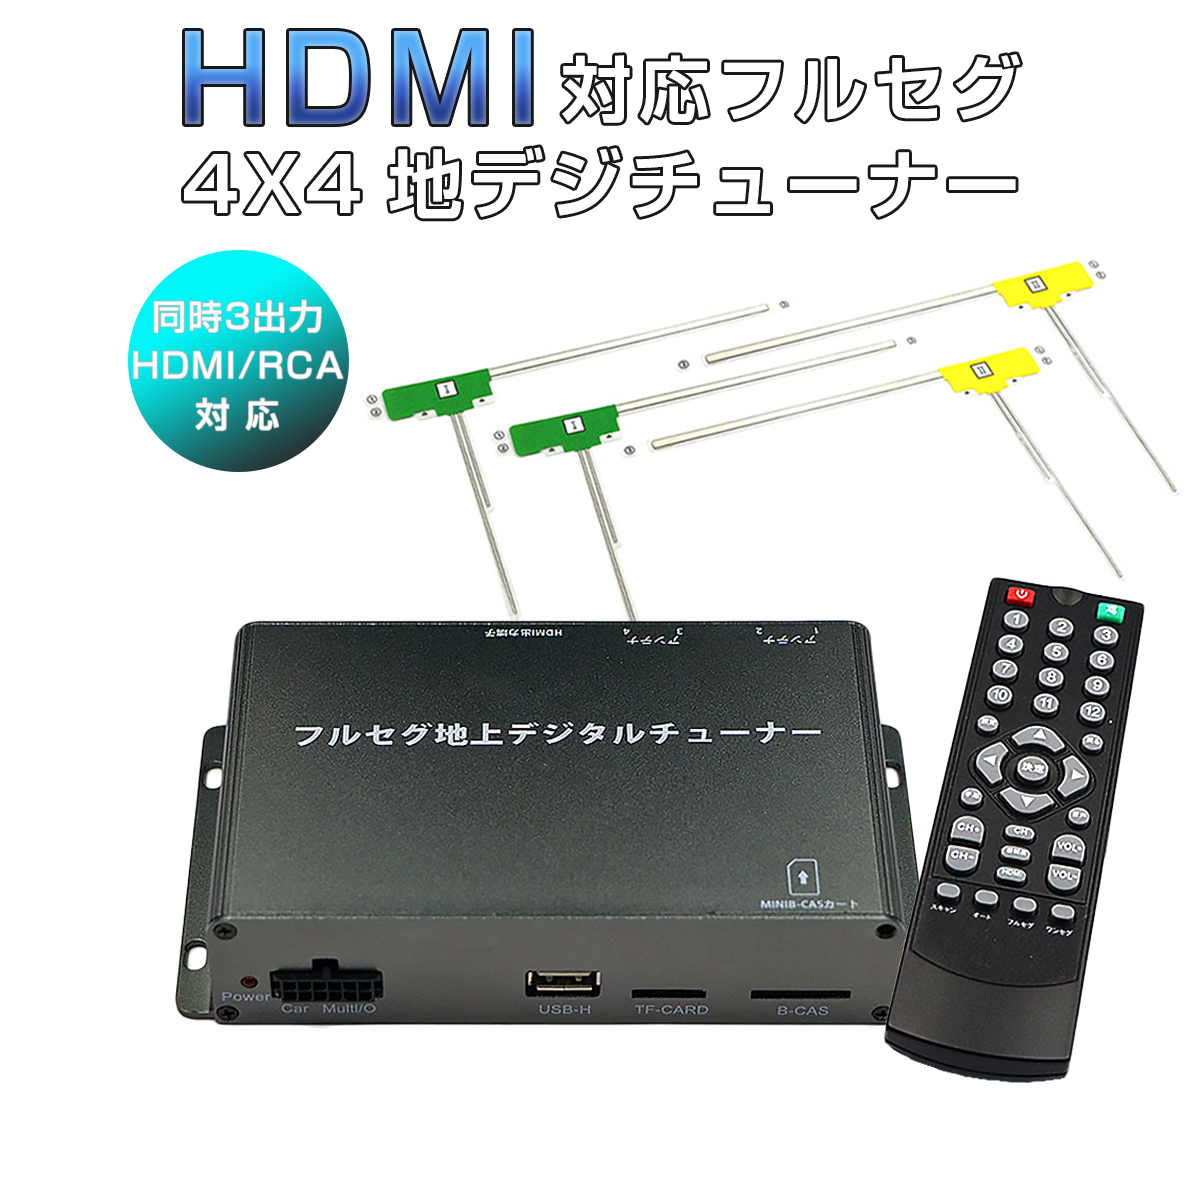 ALFA用の非純正品 ROMEO SPIDER 地デジチューナー カーナビ ワンセグ フルセグ HDMI 4x4 高性能 4チューナー 4アンテナ 高画質 自動切換 150km/hまで受信 古い車載TVやカーナビにも使える 12V/24V フィルムアンテナ miniB-CASカード付き 6ヶ月保証